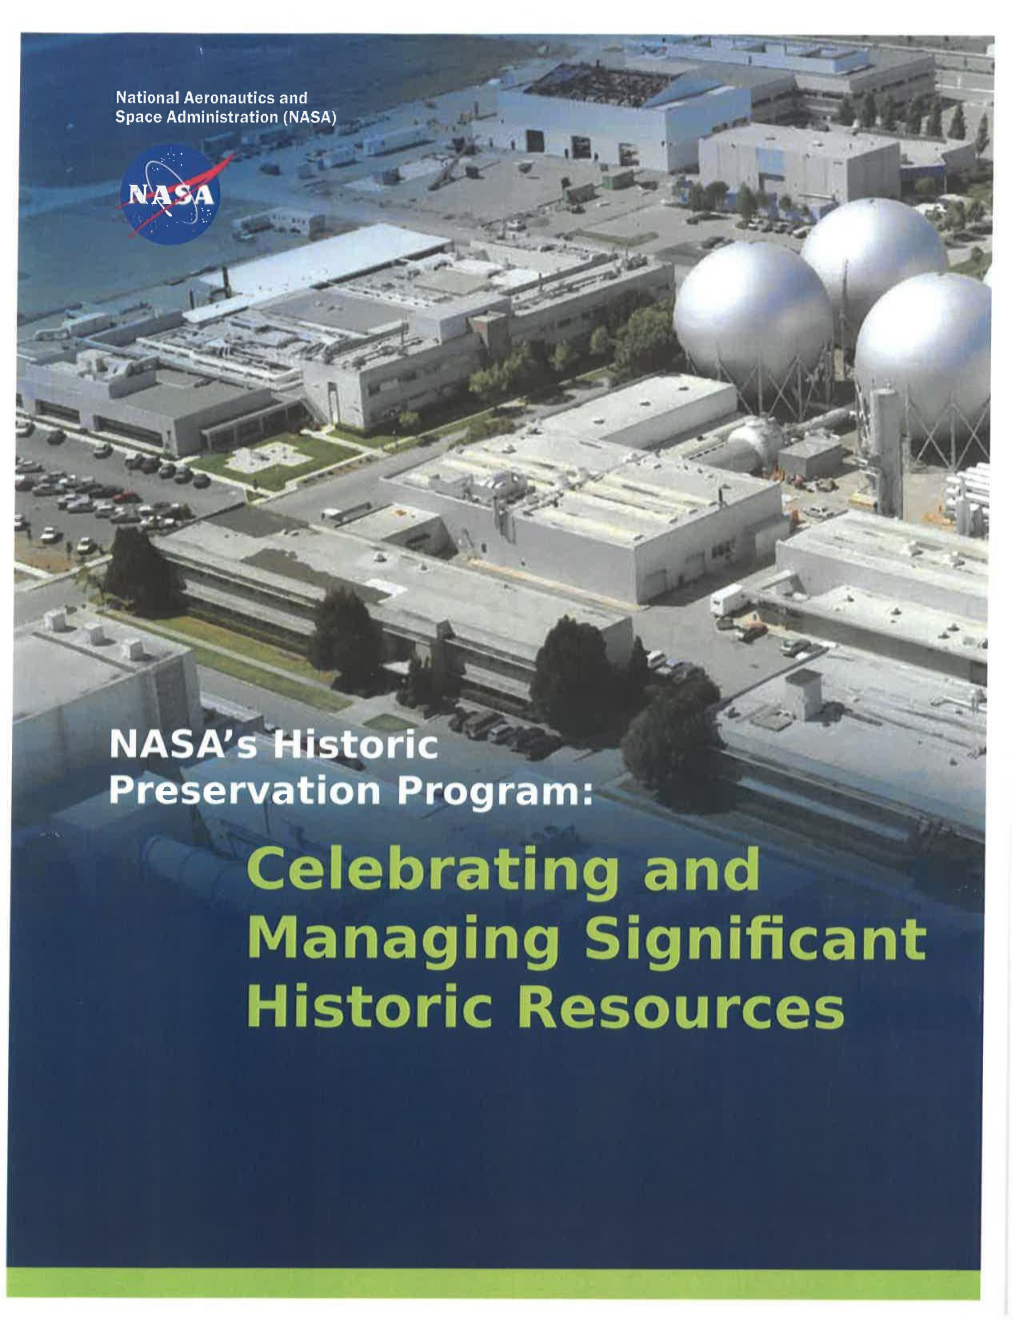 NASA Cultural Resources Management Program